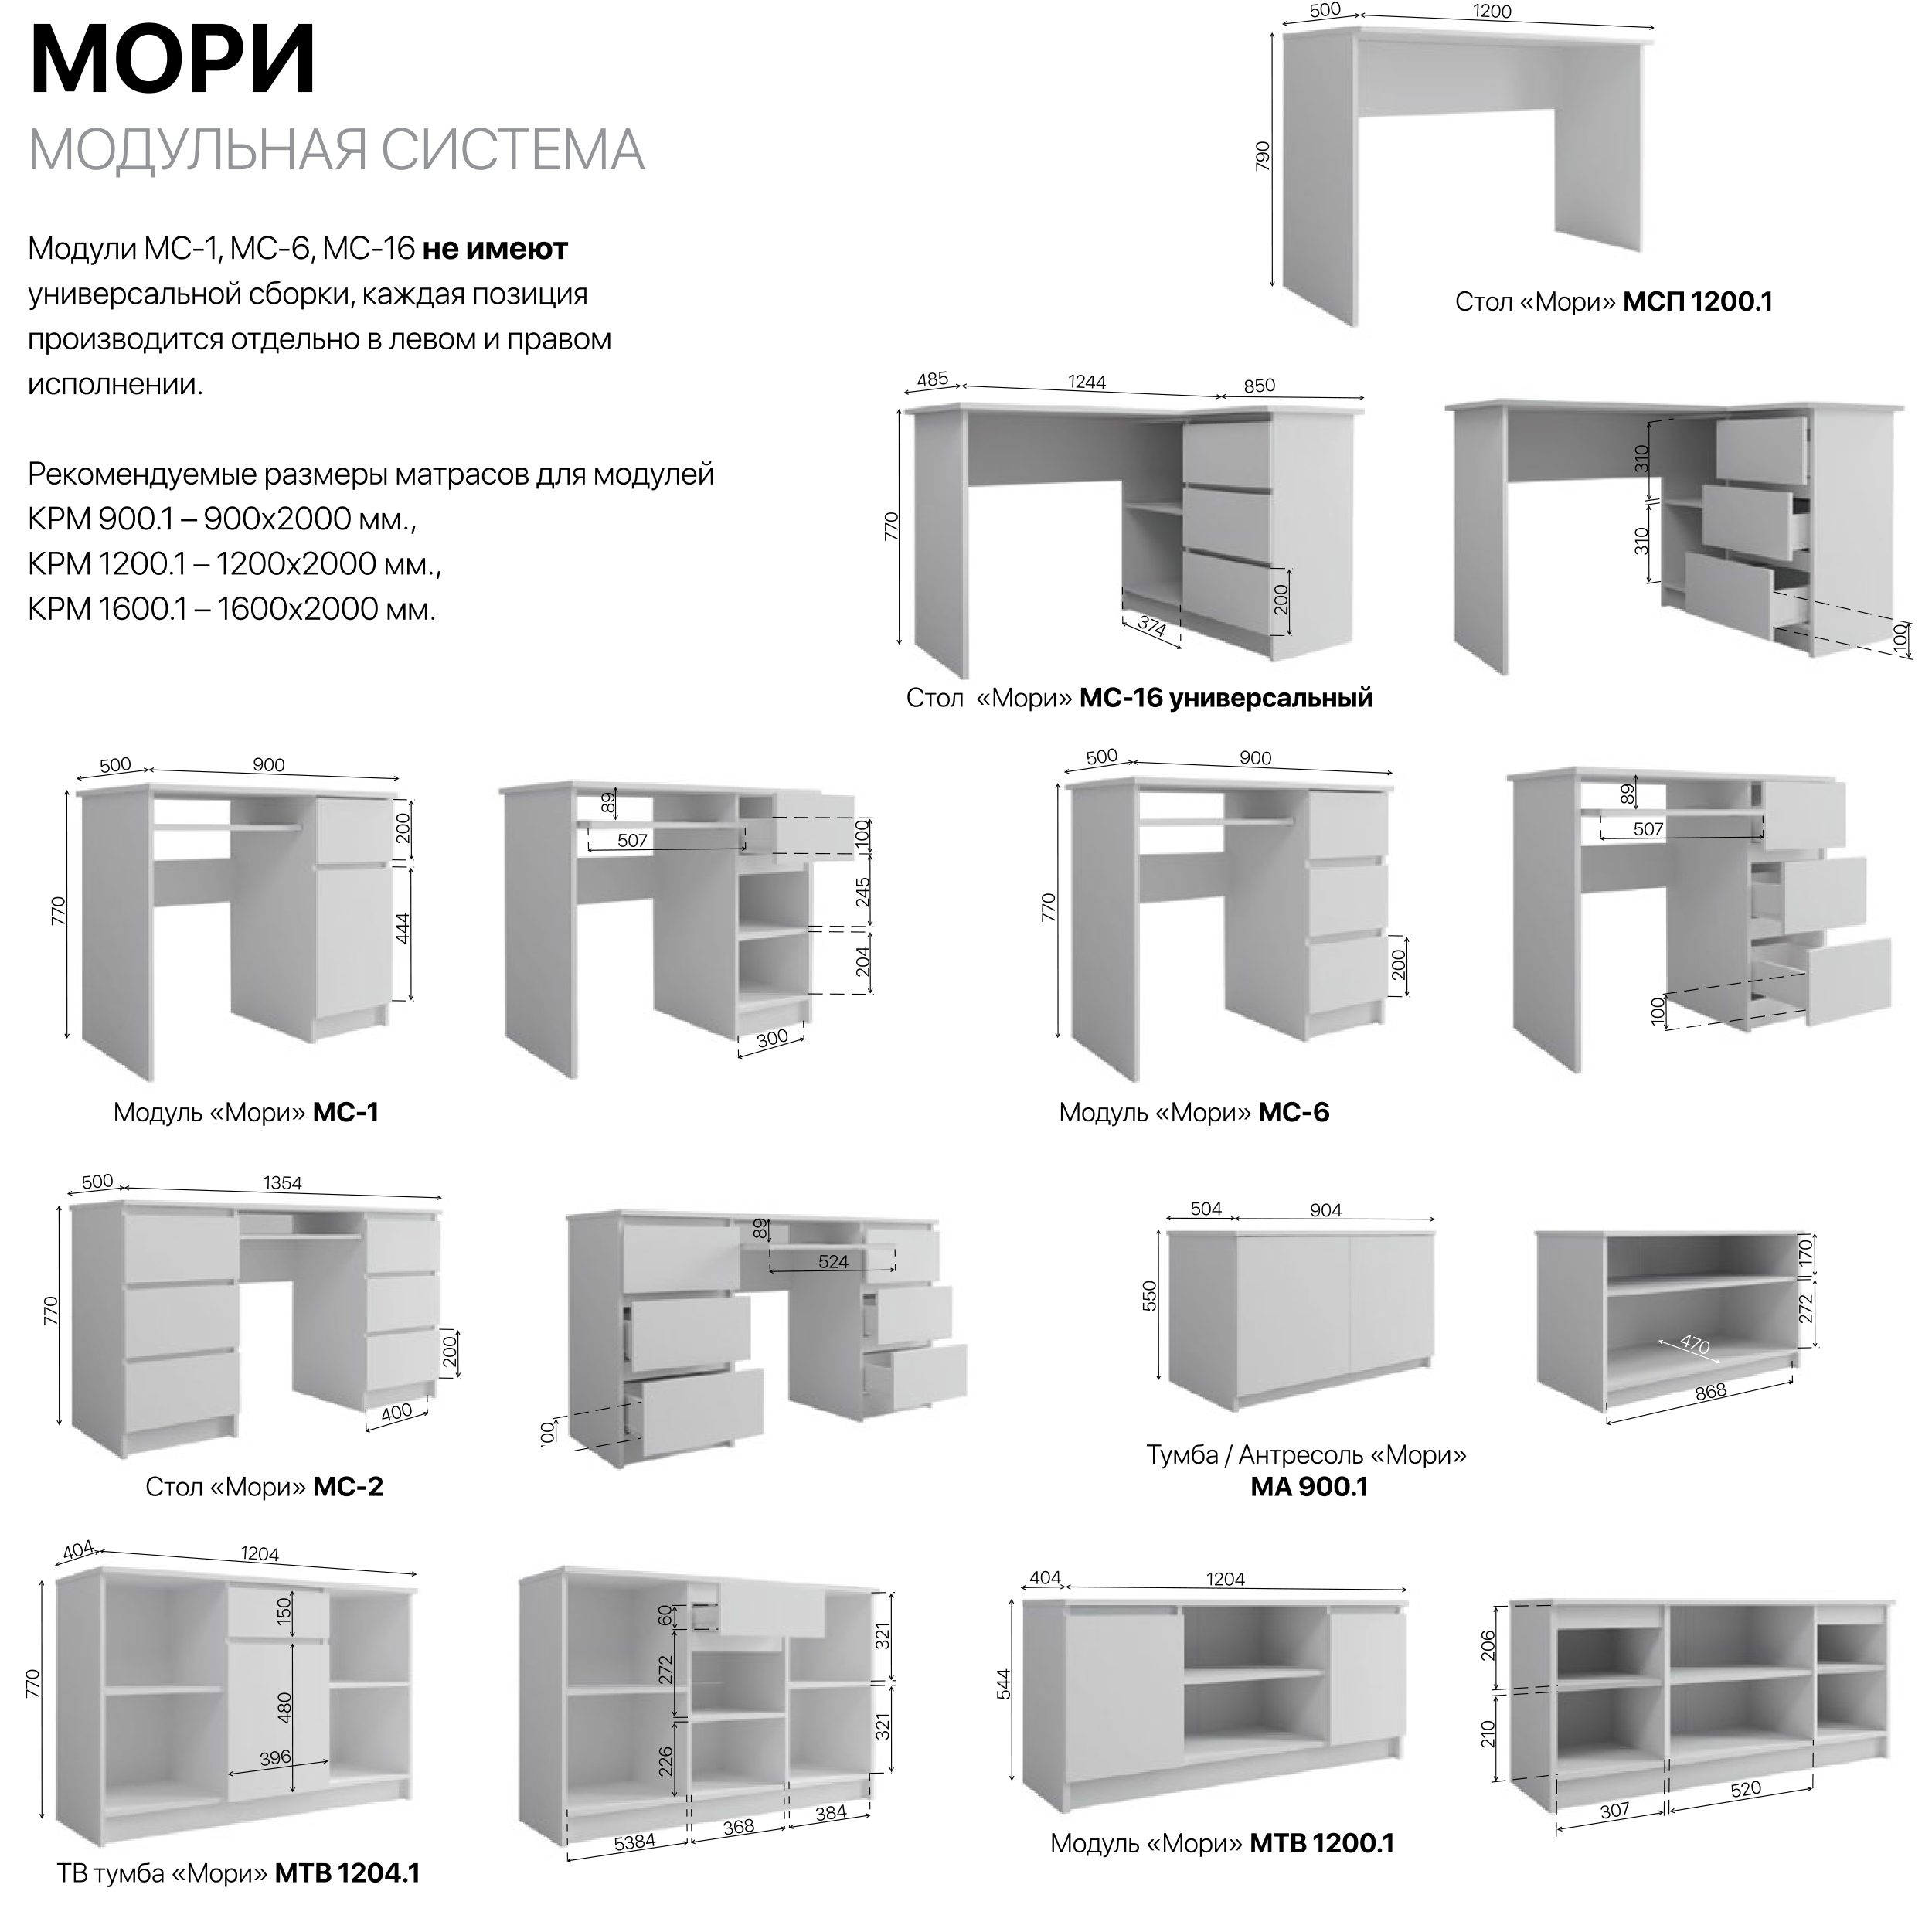 Модульная мебель Мори — страница 1 с размерами модулей